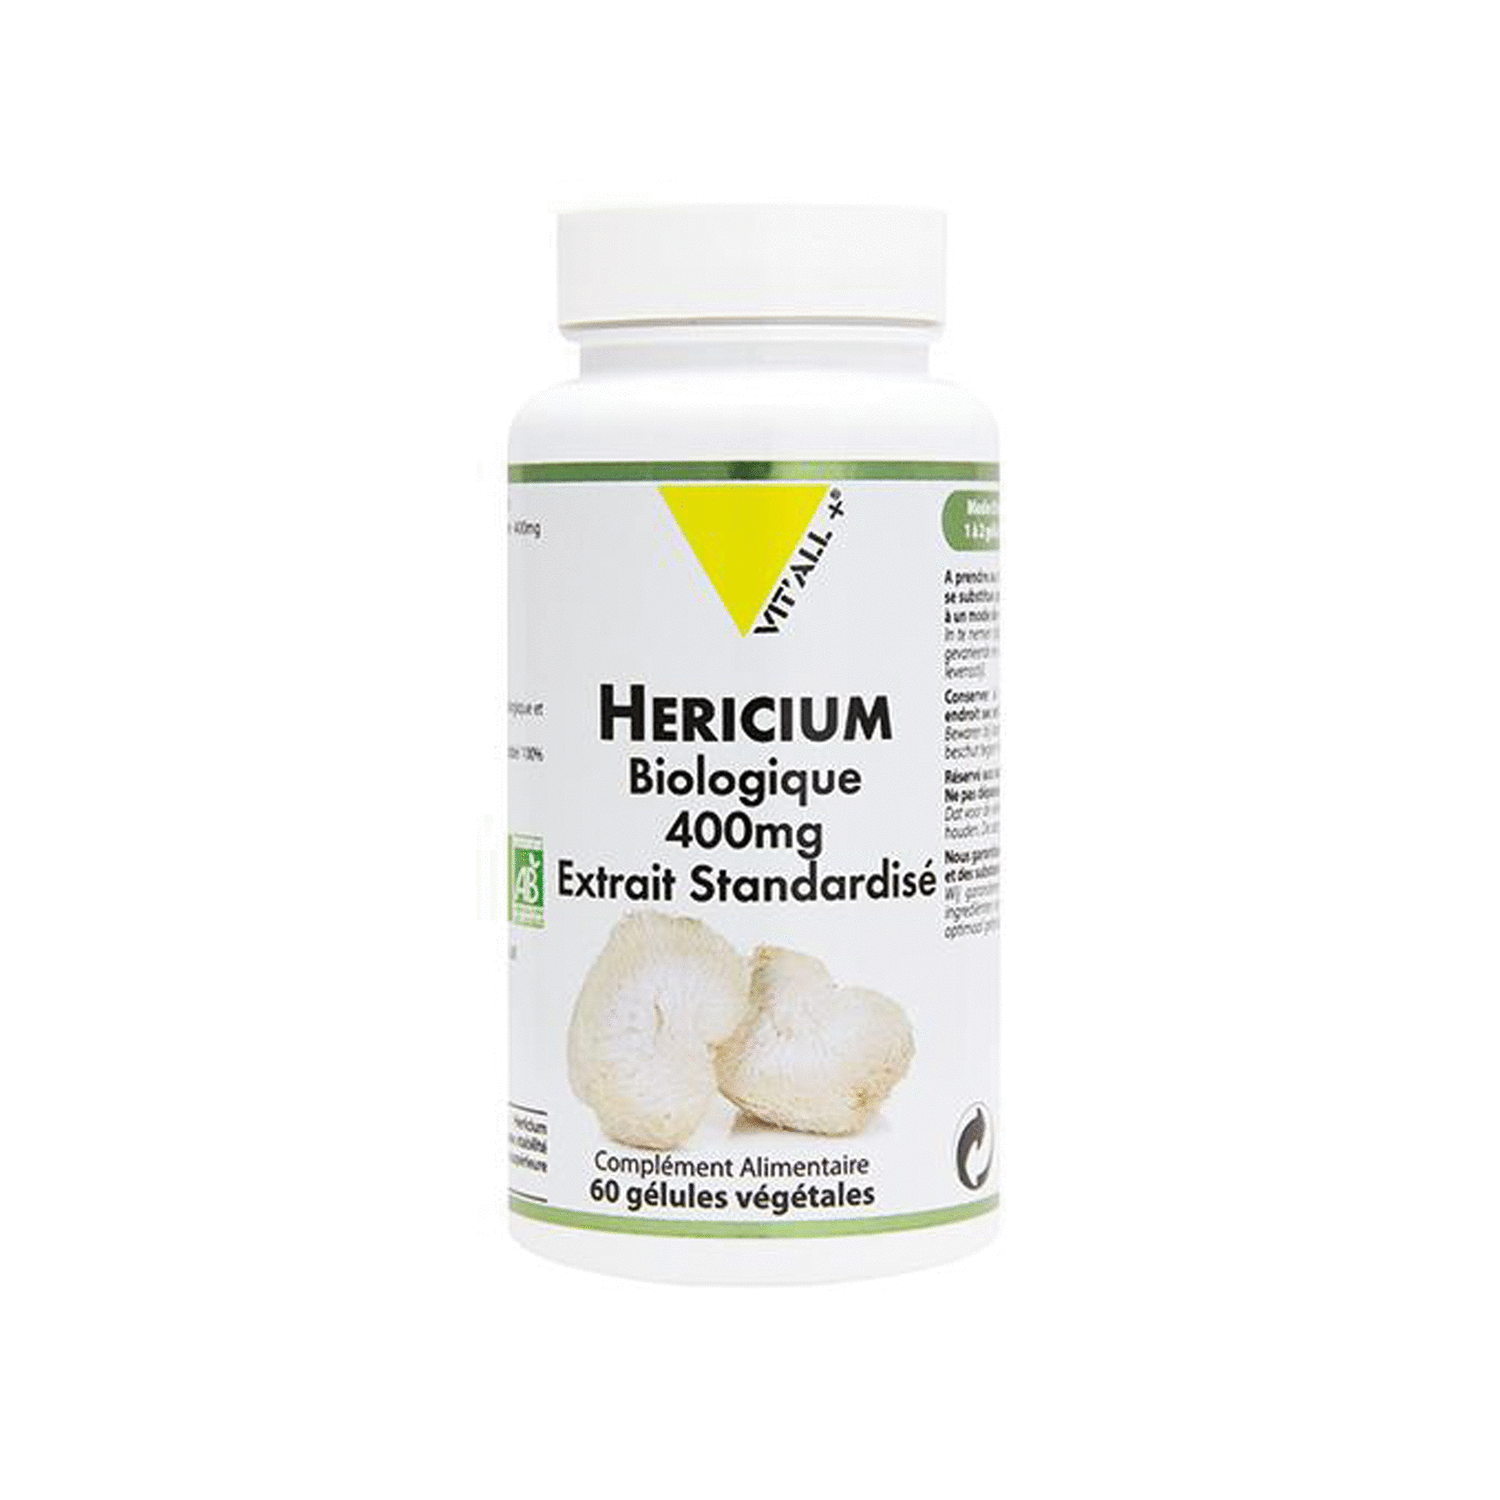 Hericium bio - Mémoire (60 gélules)